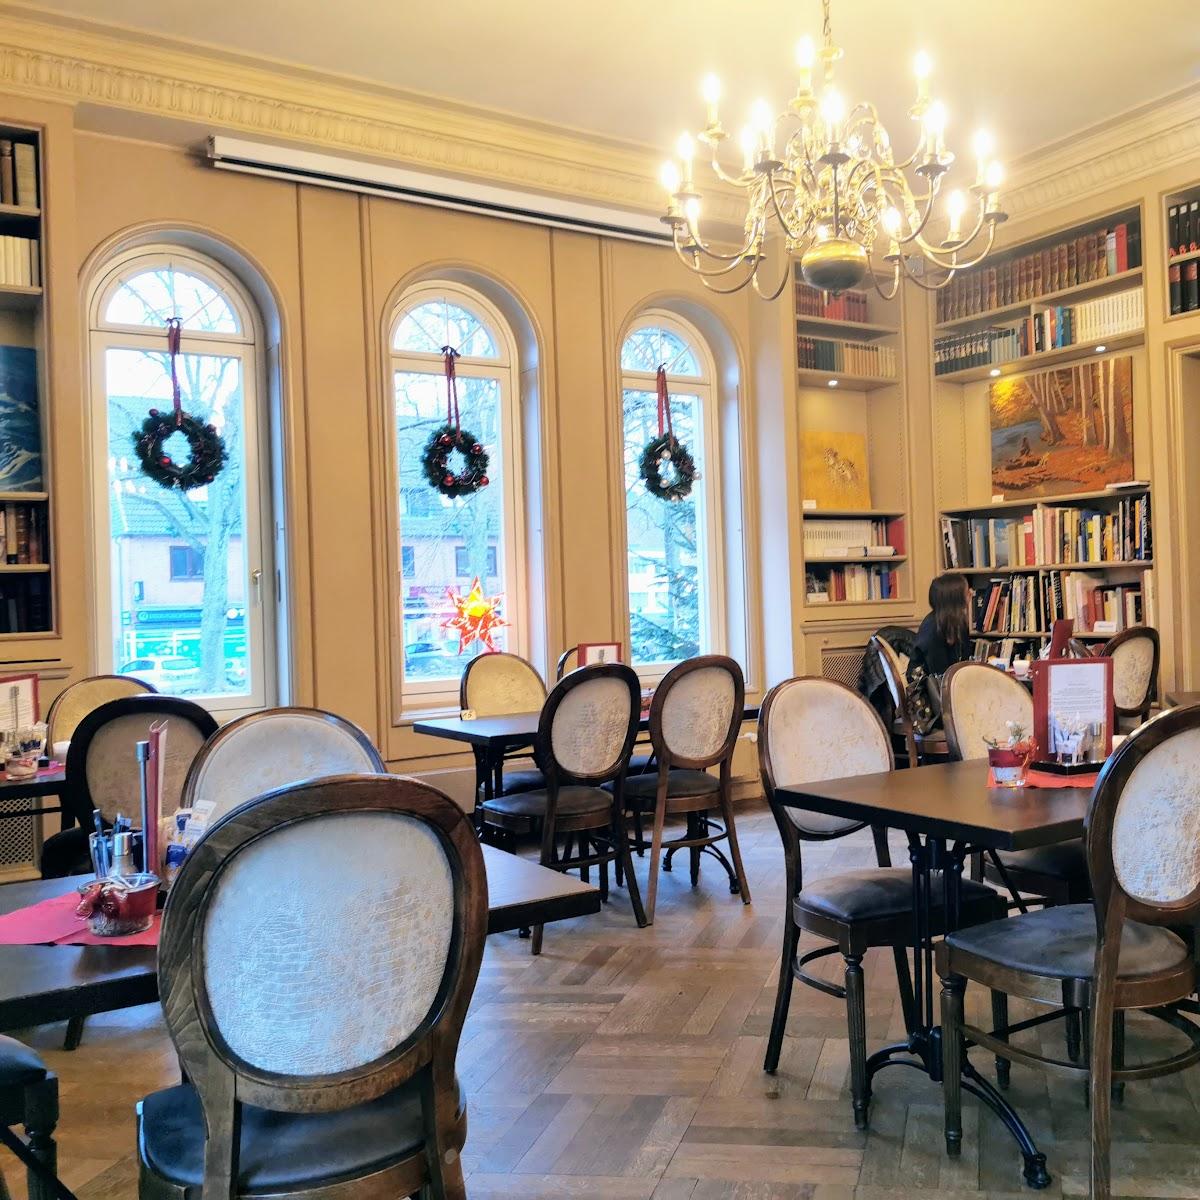 Restaurant "Die Villa - Ihr Wiener Kaffeehaus" in Hamburg